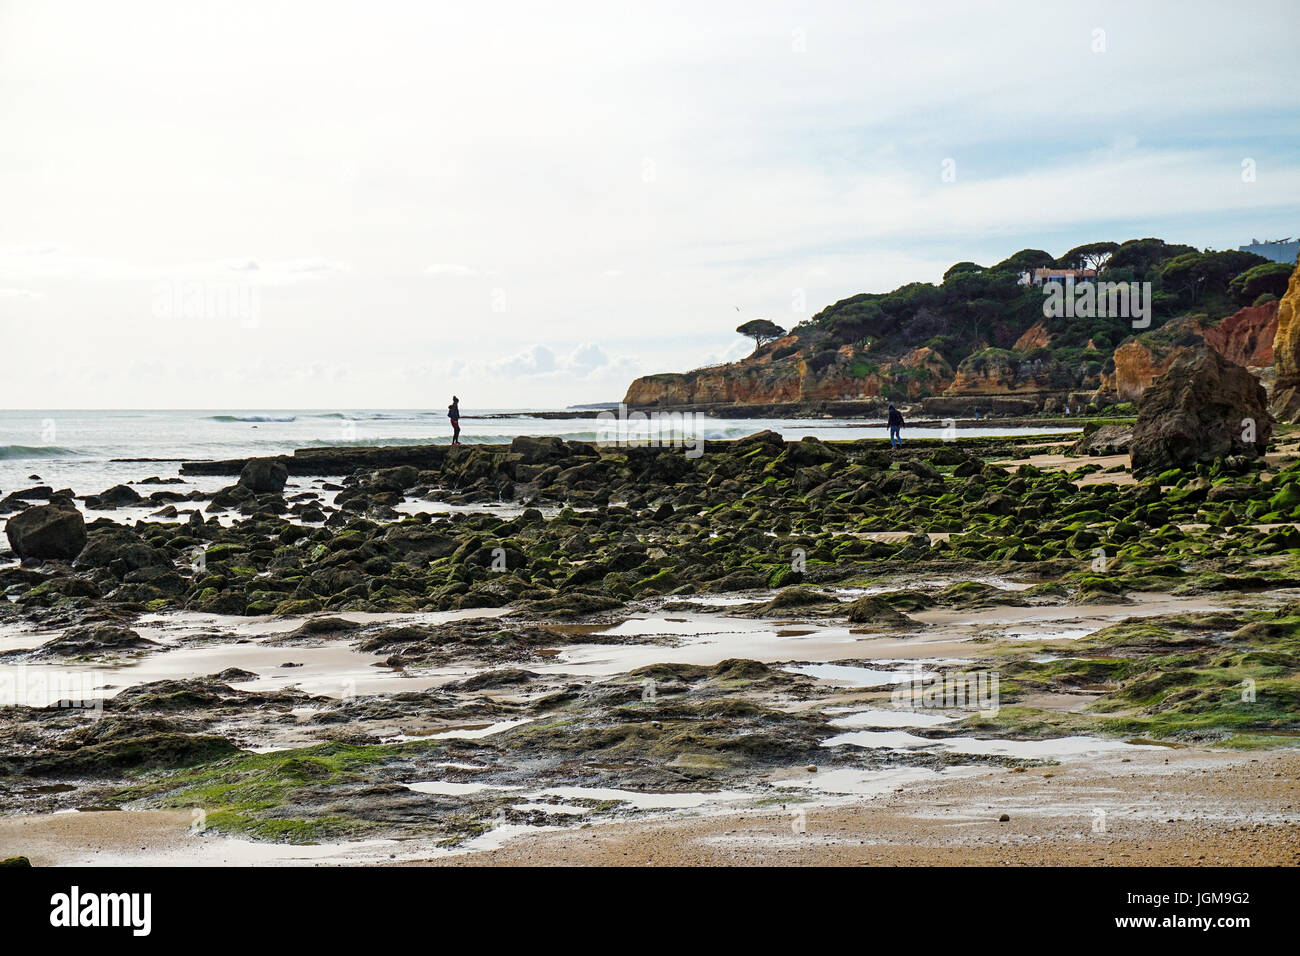 Europe, Portugal, Algarve, beach, Praia, beach, dies down, siluette, olhos de agua, rocks, stones Stock Photo